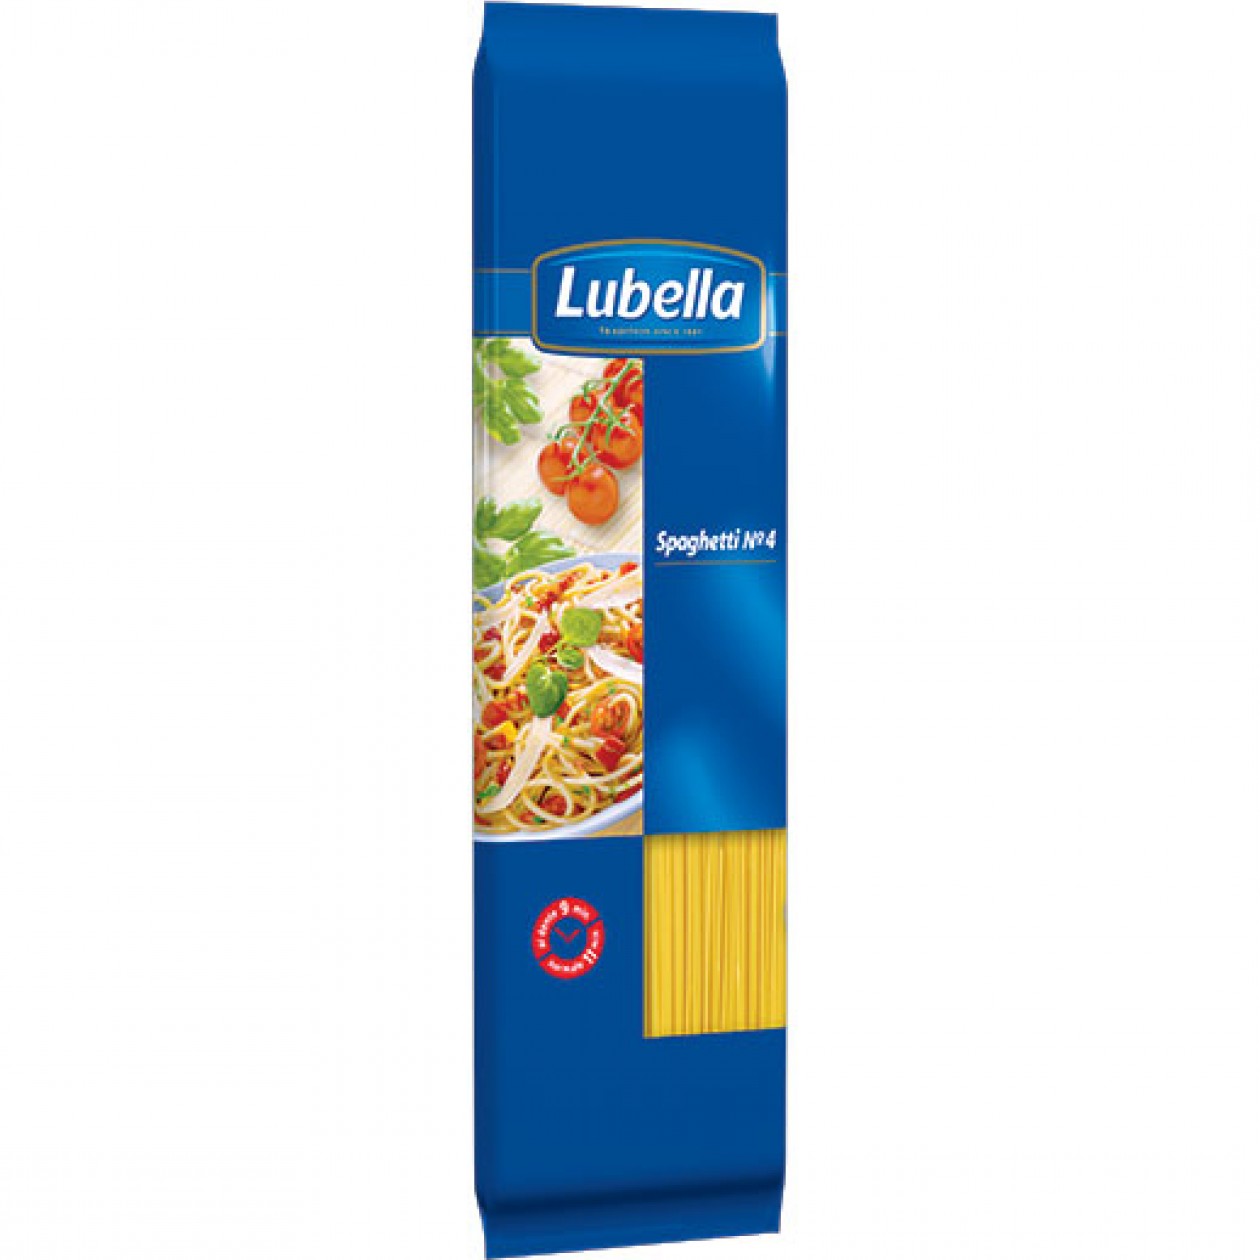 Lubella Spaghetti - 4 20x400g